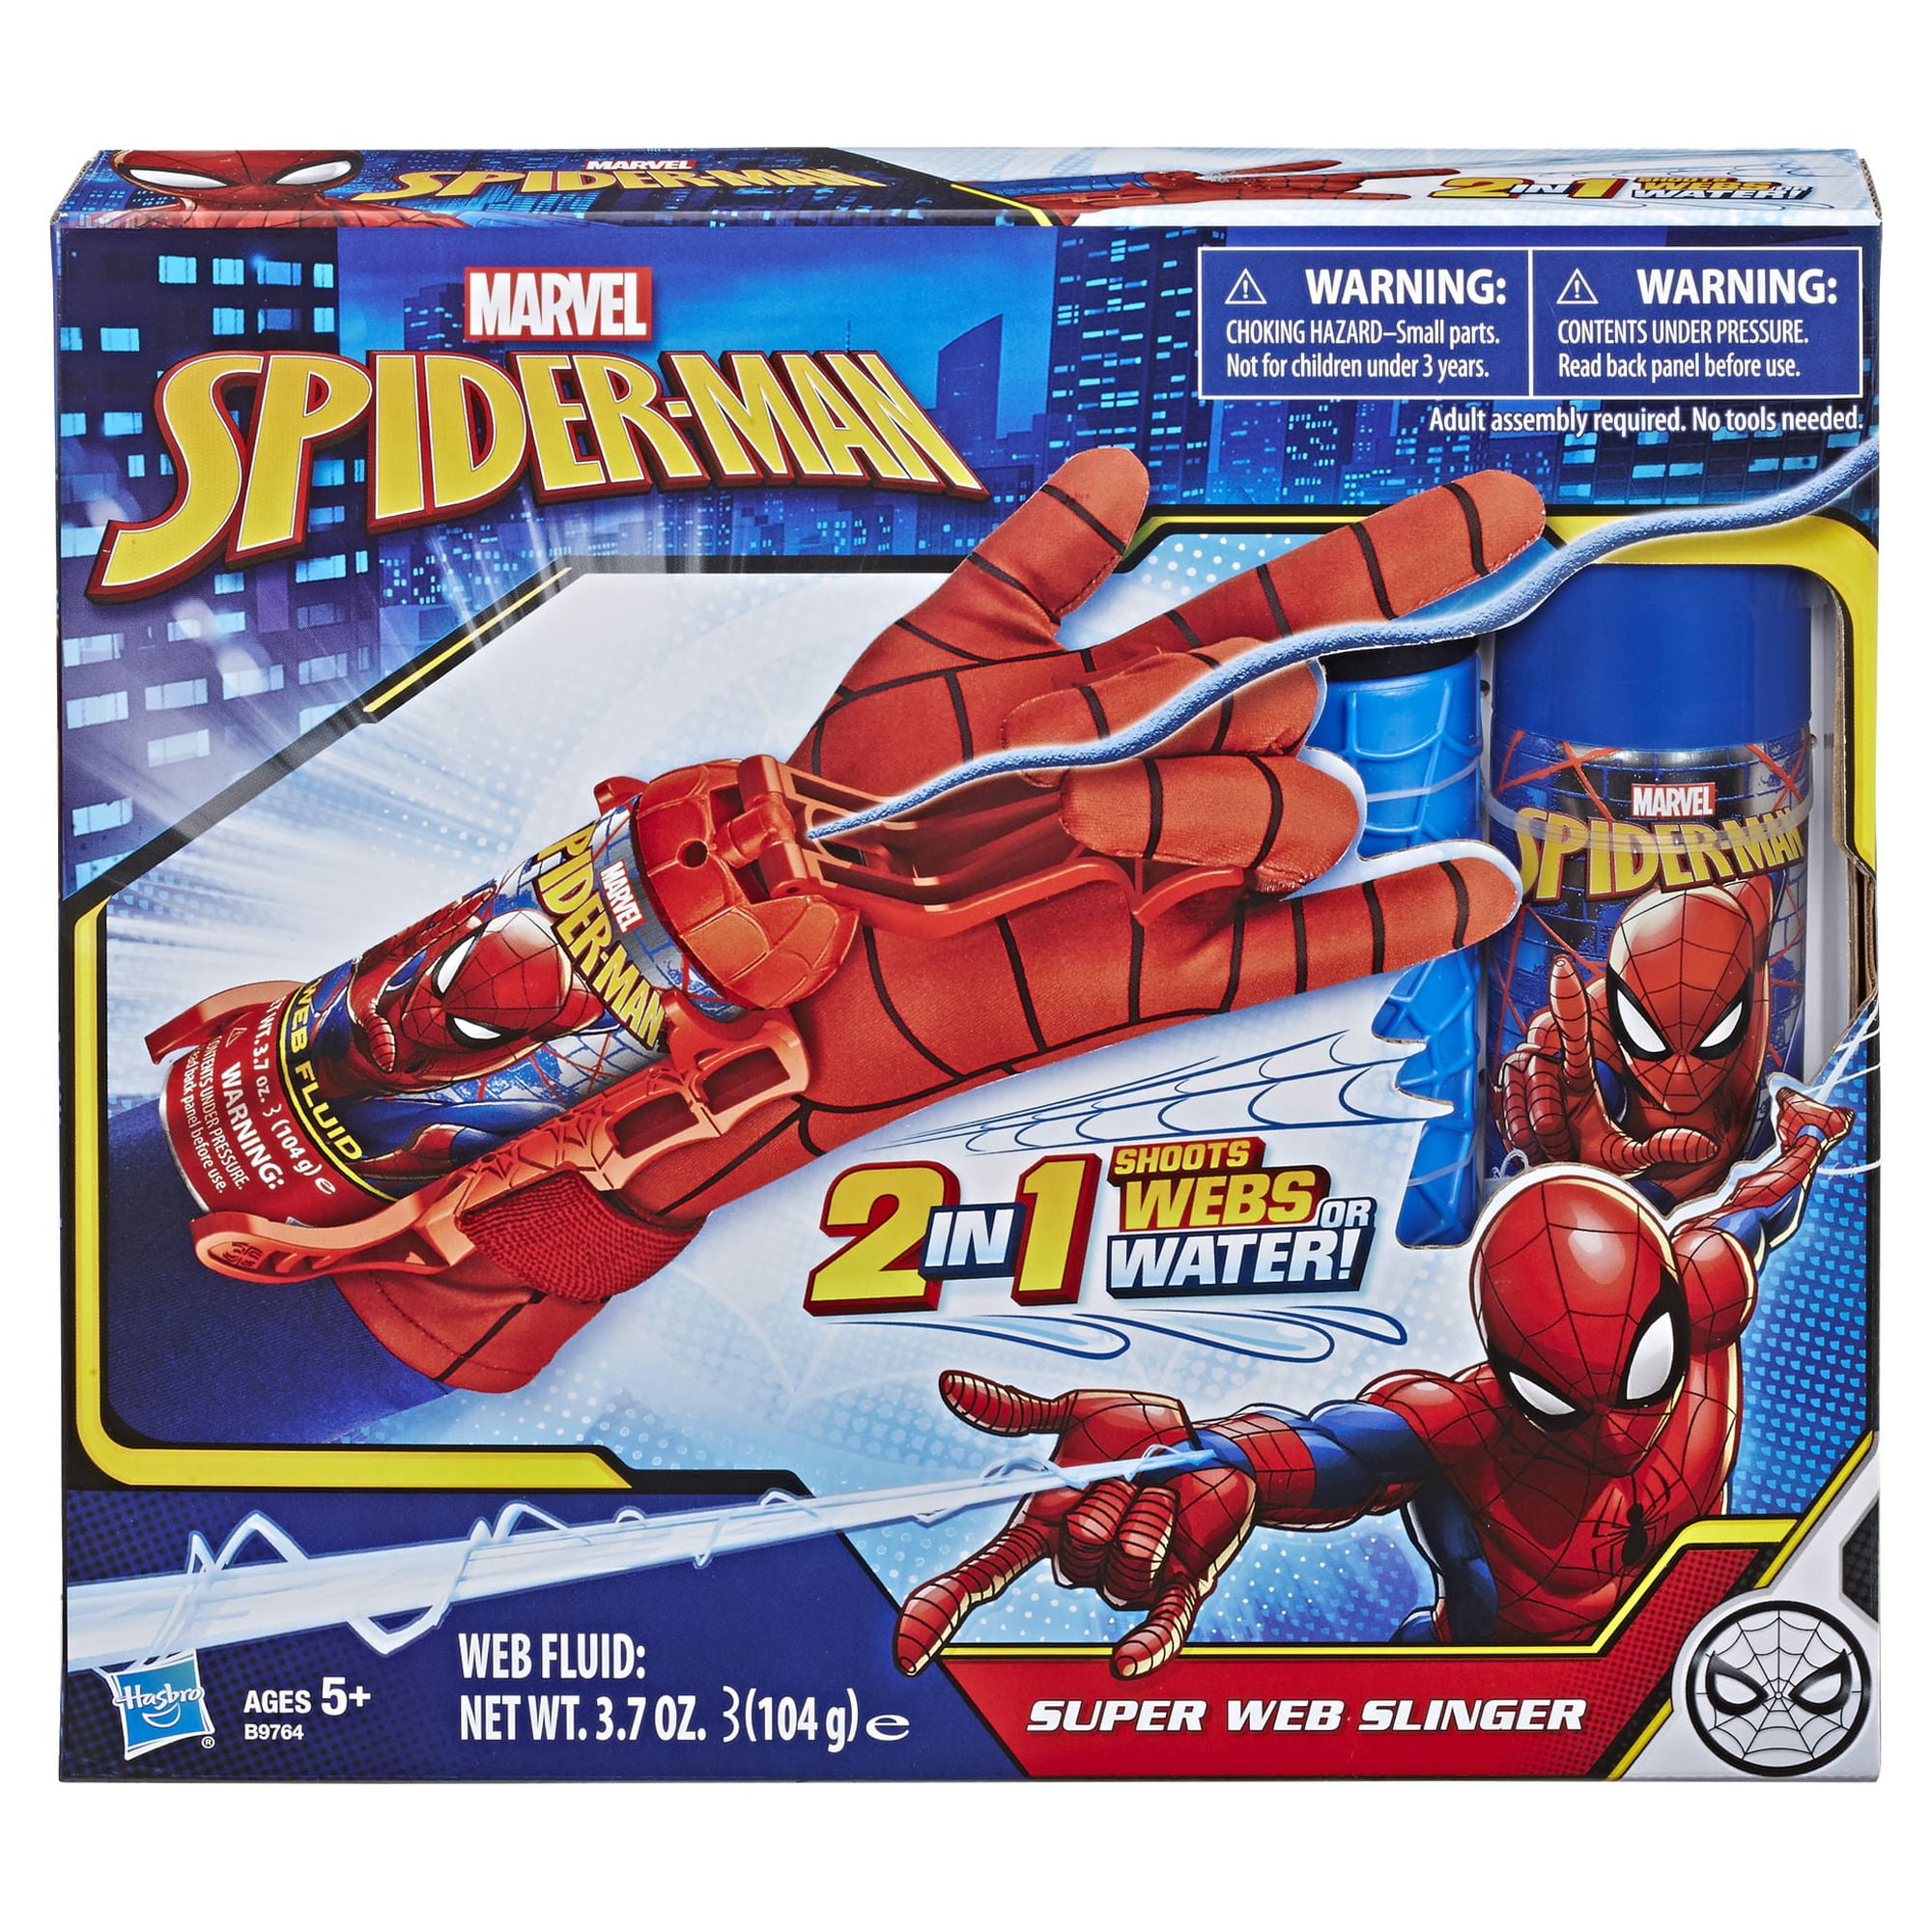 Spider Gloves Man Web Shooter Pour Enfants, Lanceur Spider Kids